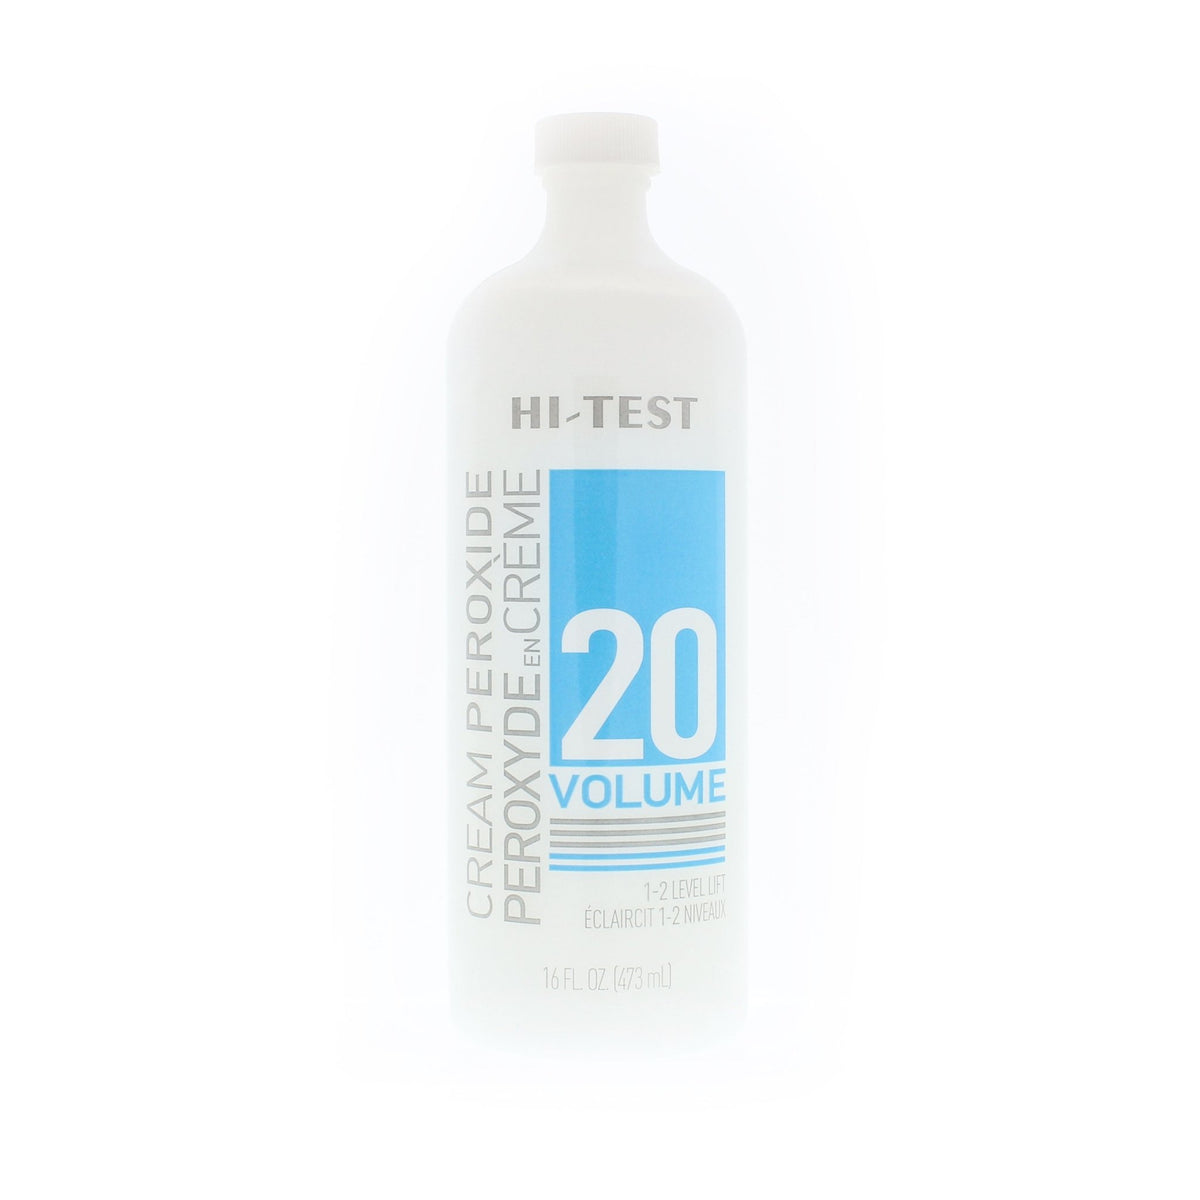 Hi-Test Cream Peroxide - 20 VOL - Blend Box